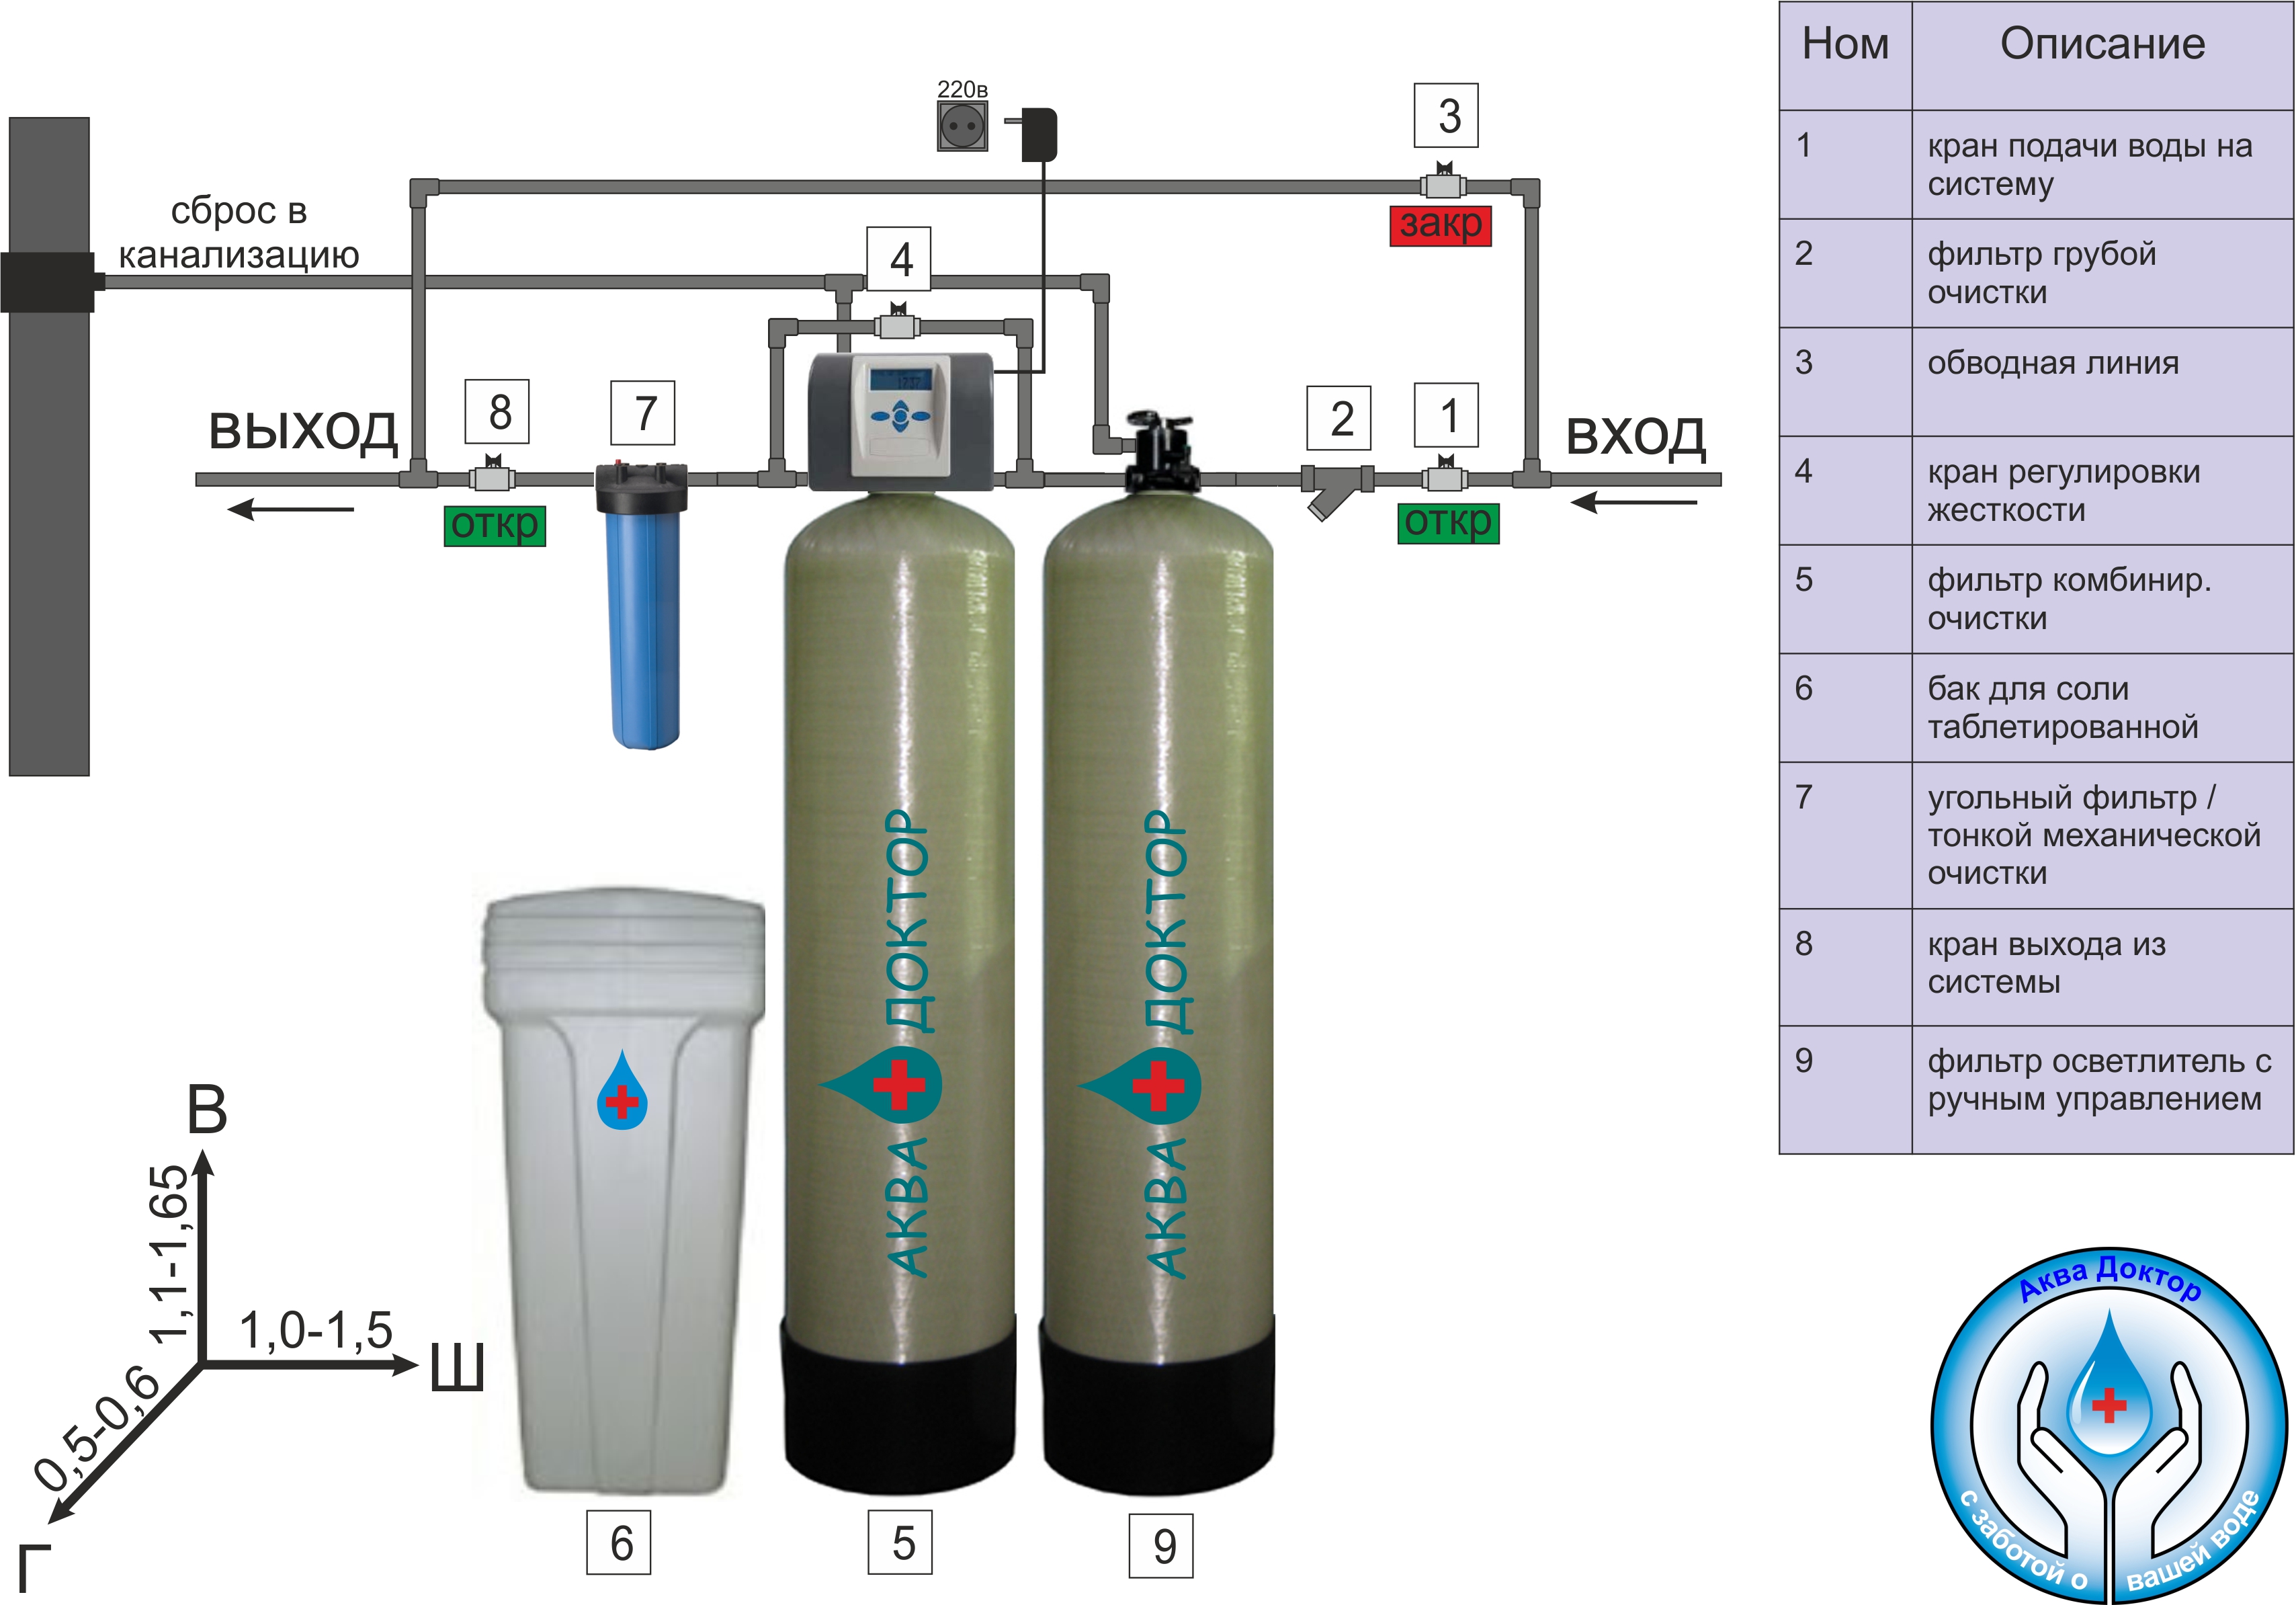 Подобрать очистку воды. Система фильтров для очистки воды из скважины схема. Схема подключения фильтра грубой очистки воды. Схема установки колонн фильтров водоподготовки. Схема подключения фильтрации воды.